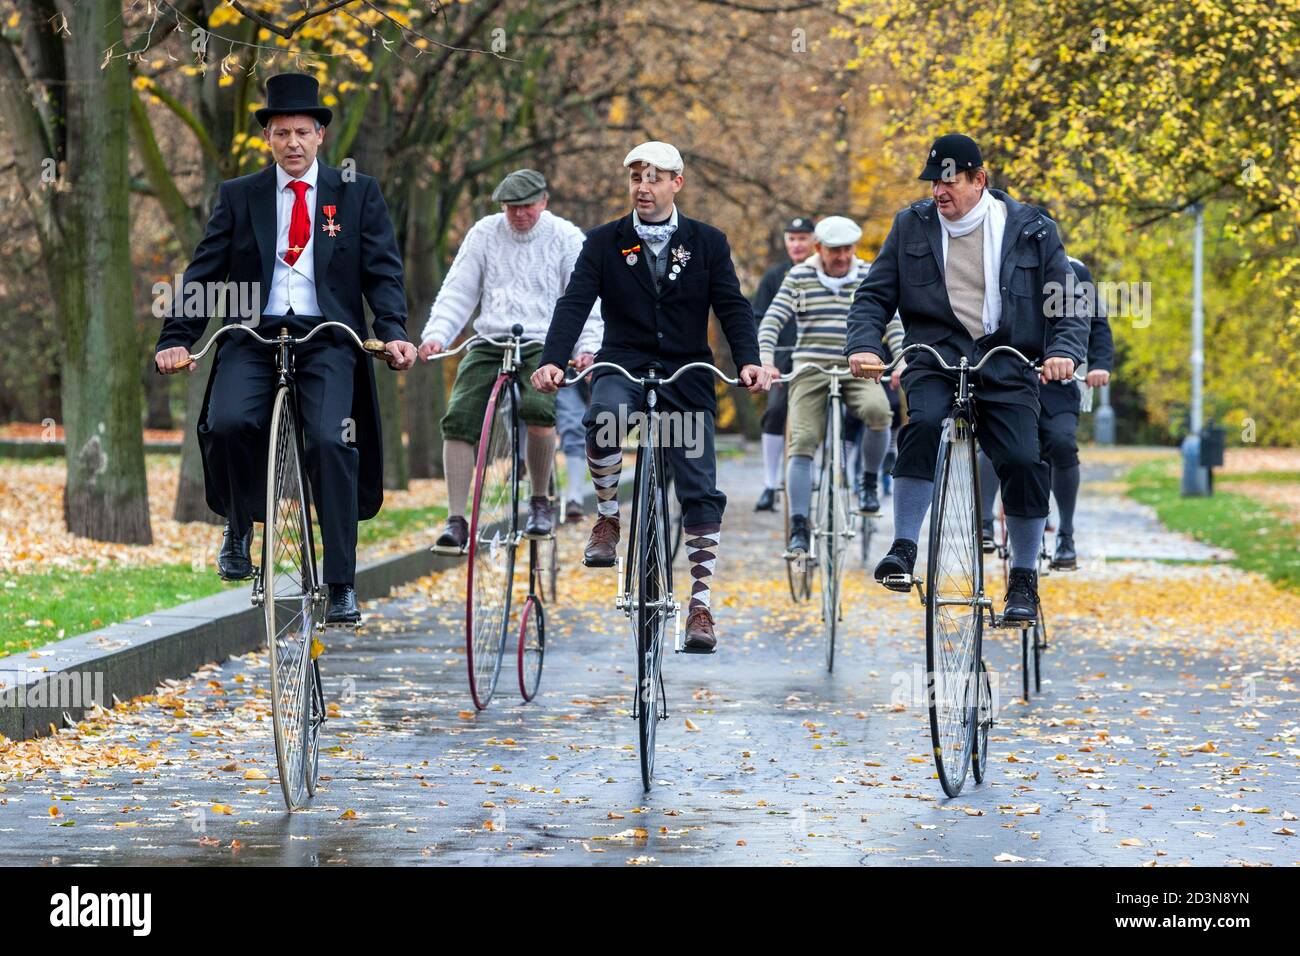 Groupe de messieurs sur Penny Farthing bicyclettes roues hautes hommes promenade en groupe dans le parc Banque D'Images